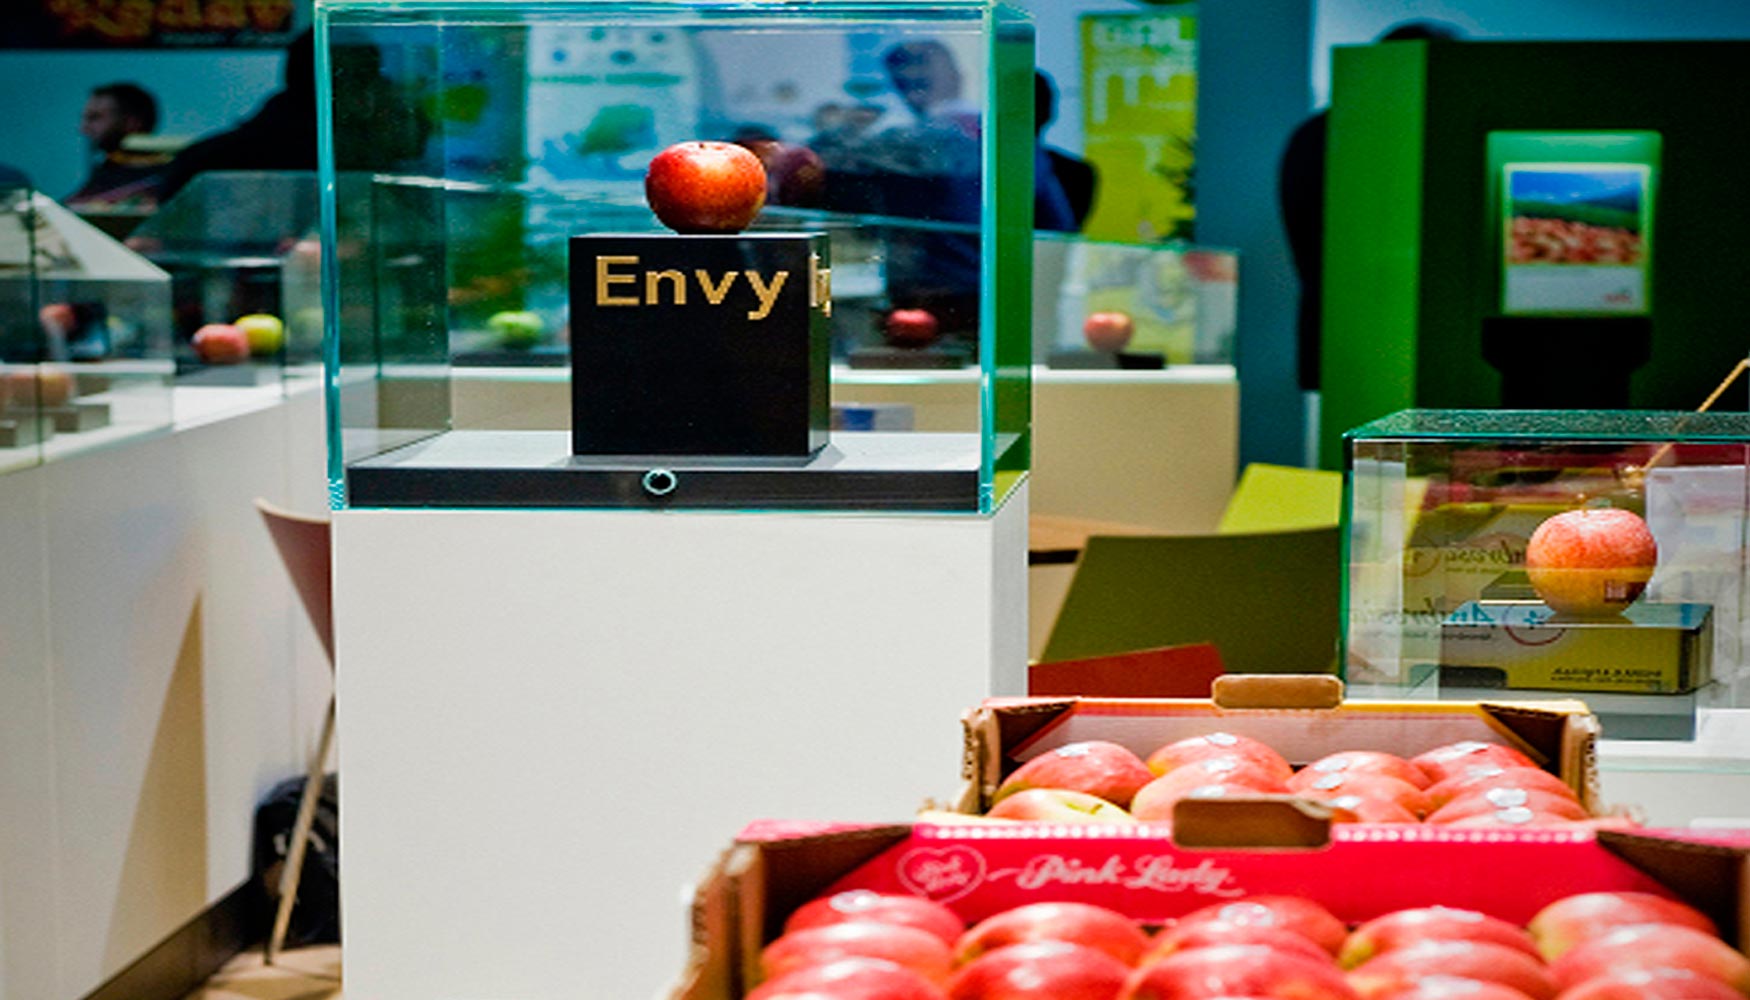 El consorcio VOG vuelve a tomar parte en la feria berlinesa con la innovadora manzana Envy que destaca por su dulzura...